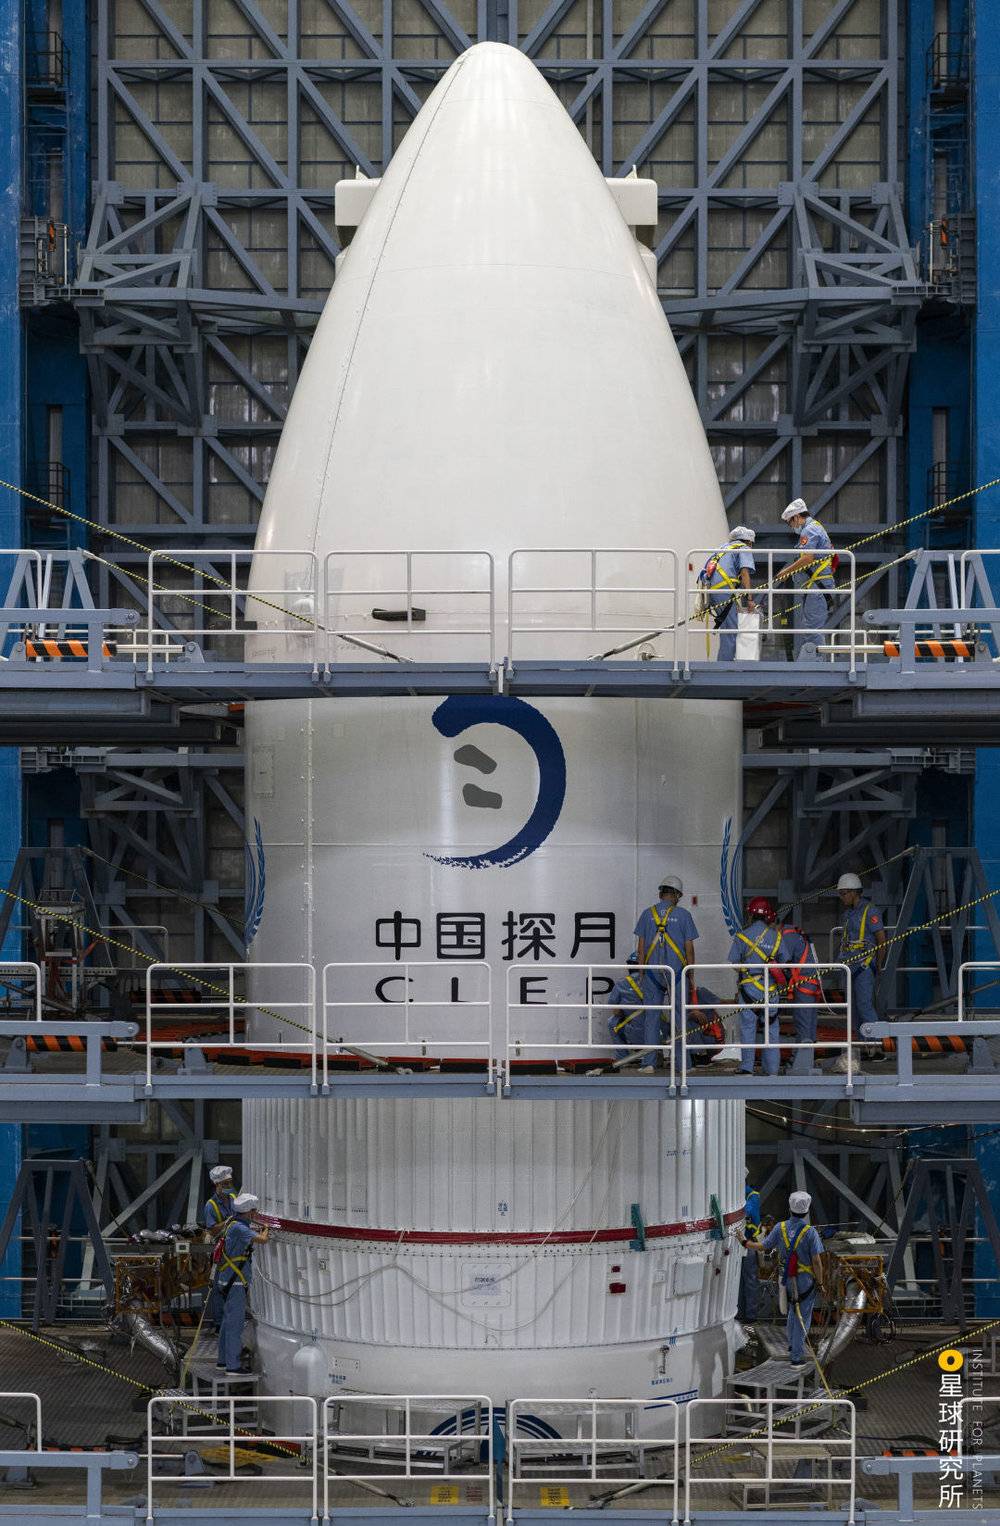 （嫦娥五号探测器与长征五号火箭组装现场，画面中央的中国探月标志意为“月亮之上”，以中国书法的笔触勾勒出一轮圆月，一双脚印踏在其上，象征着月球探索工程的终极梦想，摄影师@史啸）